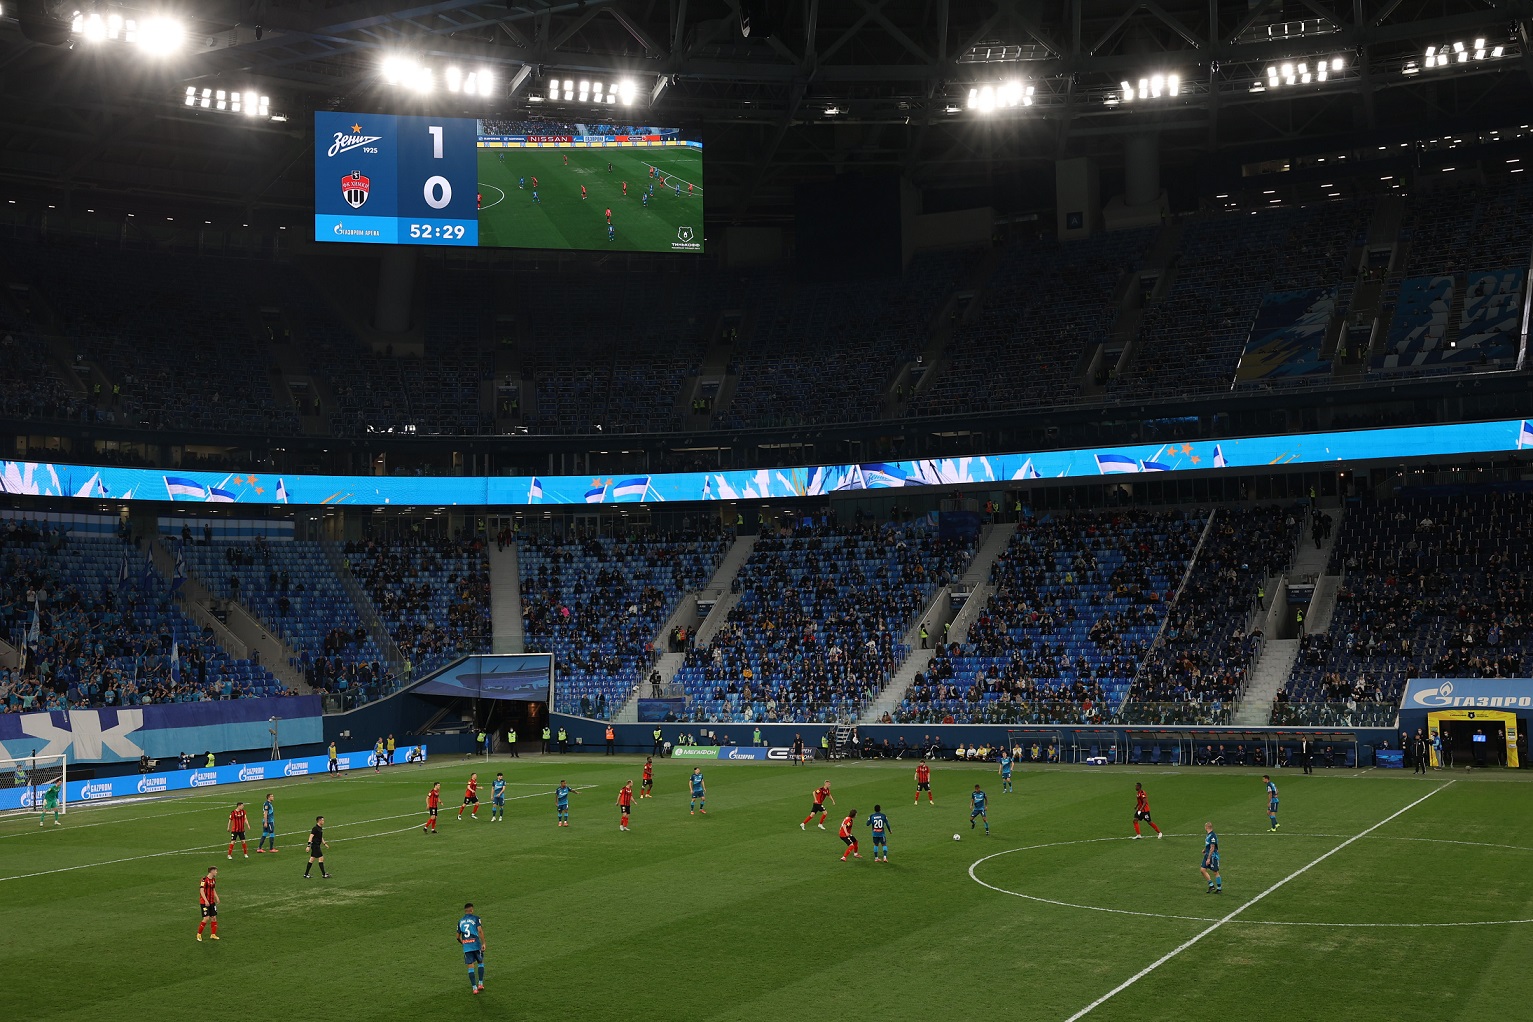 昕诺飞完成圣彼得堡新泽尼特体育场的照明升级 - 3.jpg